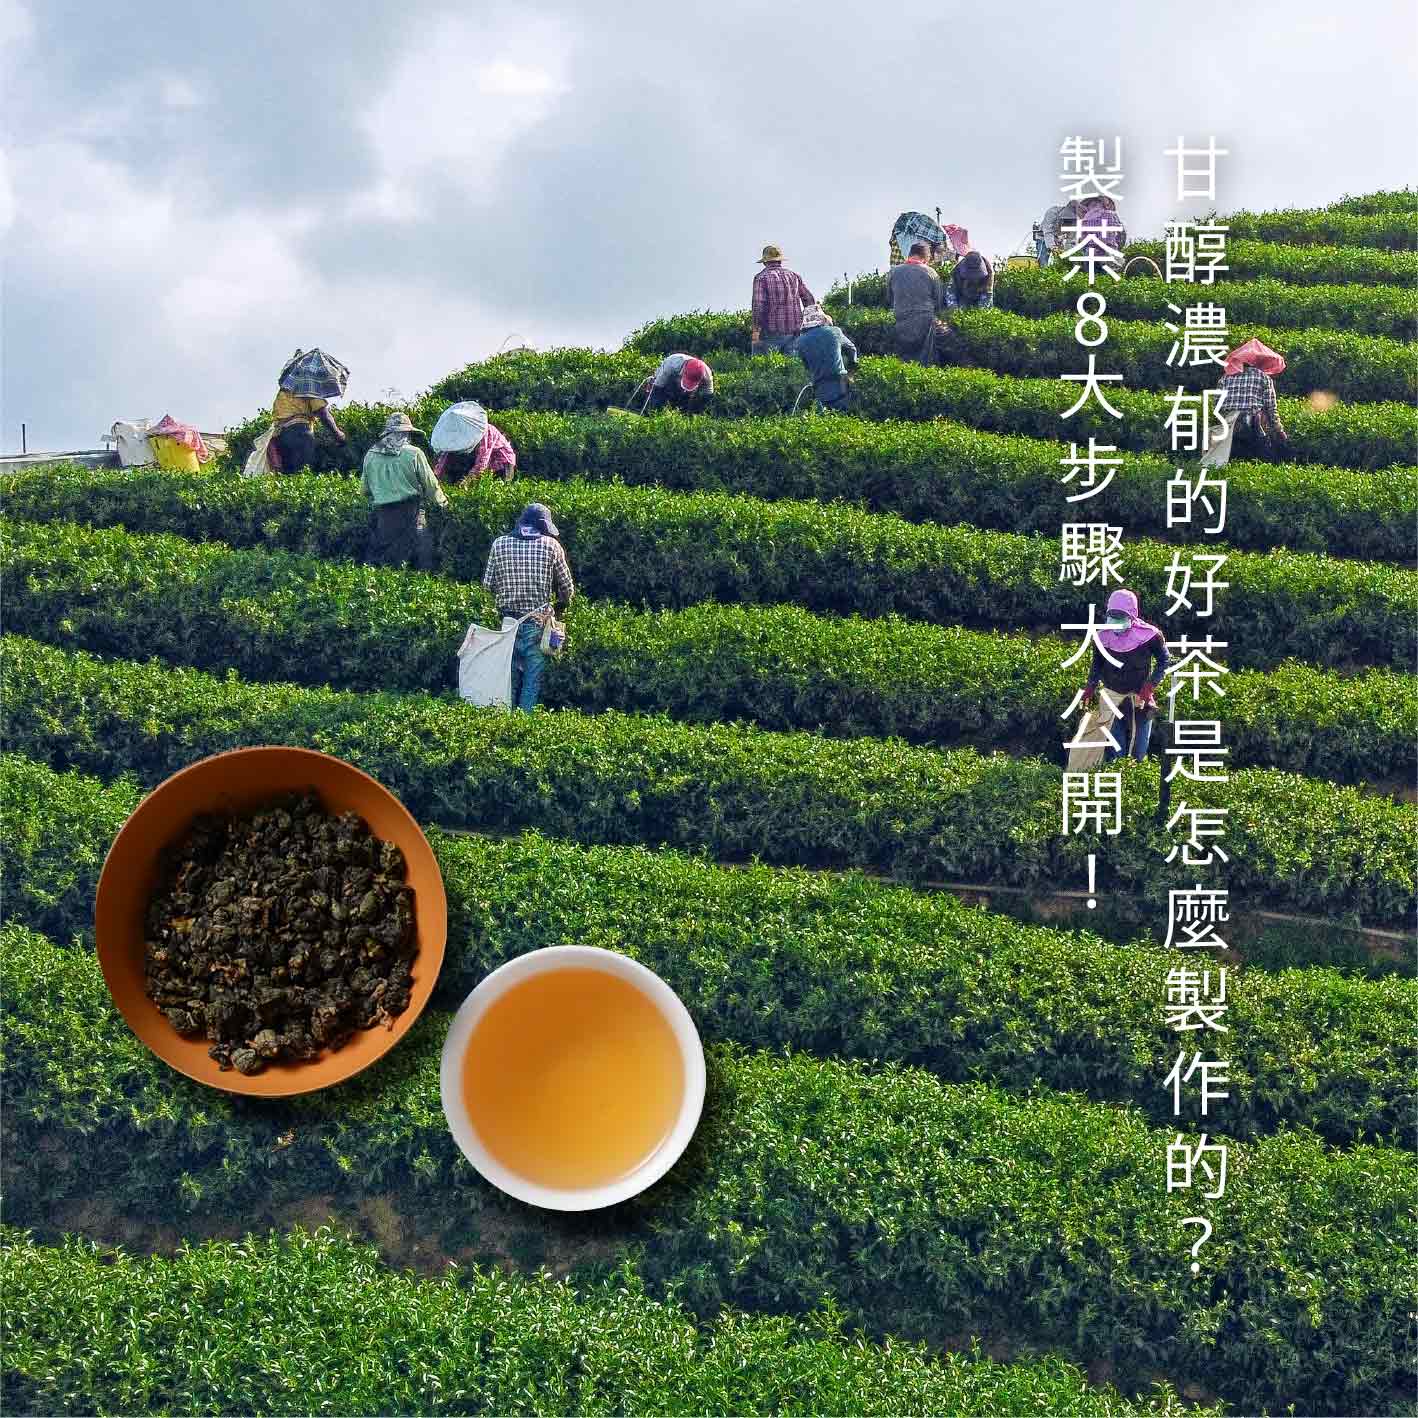 甘醇濃郁的好茶是怎麼製作的？製茶8大步驟大公開！